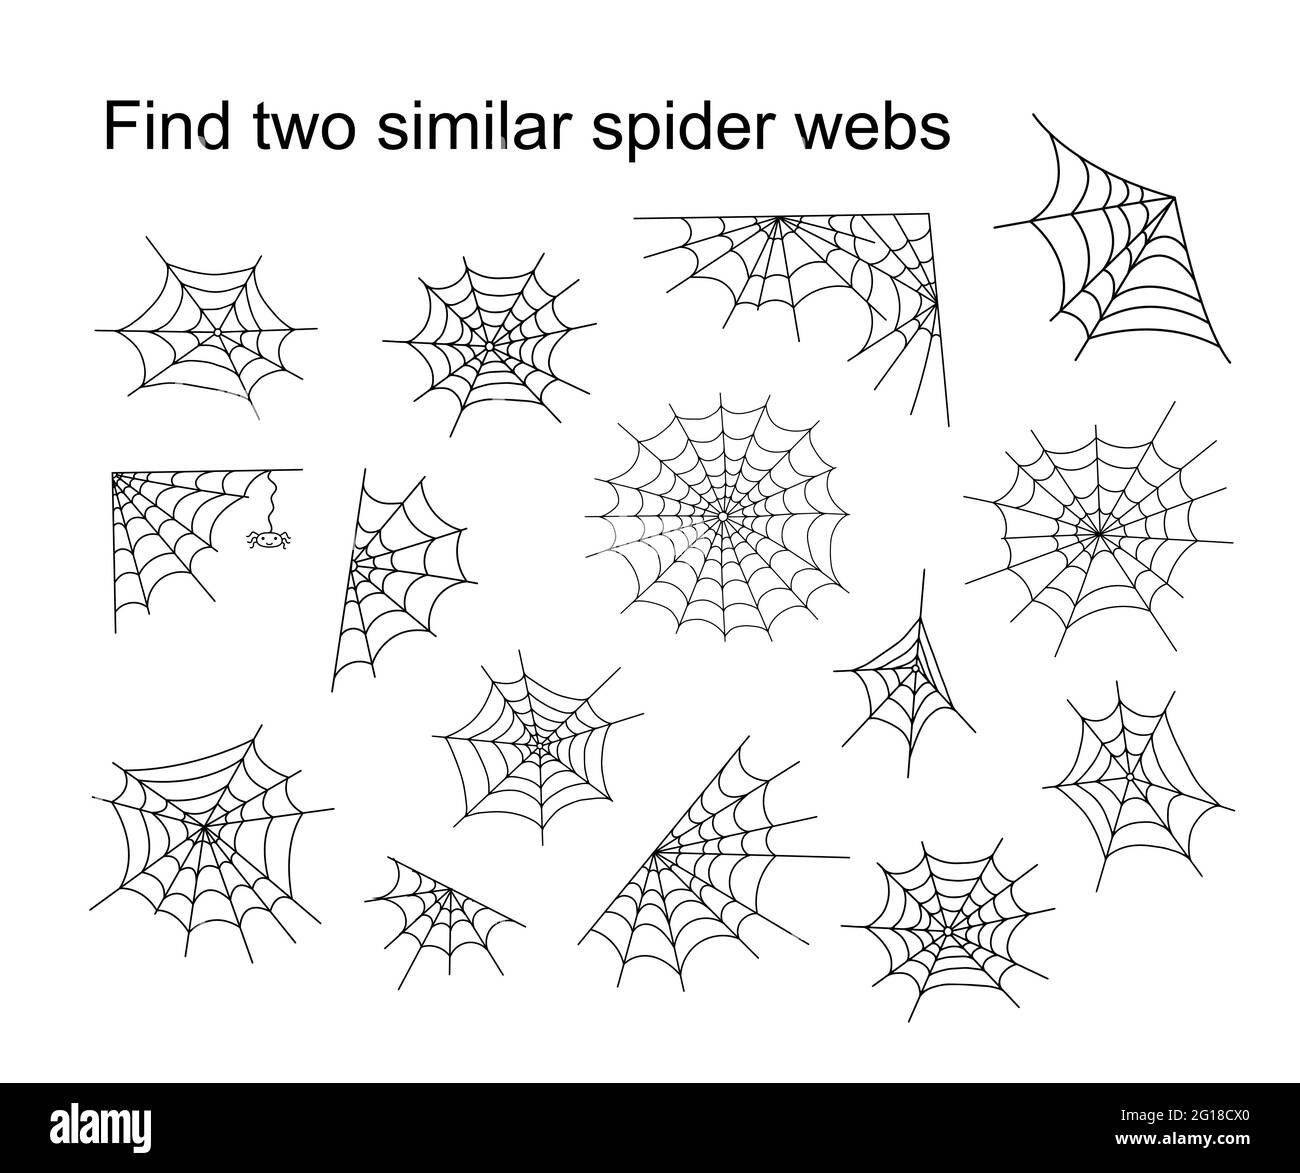 Trouvez deux semblables Halloween araignée webs activité éducative pour les enfants, esquisse dessin à la main illustration vectorielle du jeu de puzzle, simple dessin animé Doodle fantaisie insecte feuille de travail Illustration de Vecteur